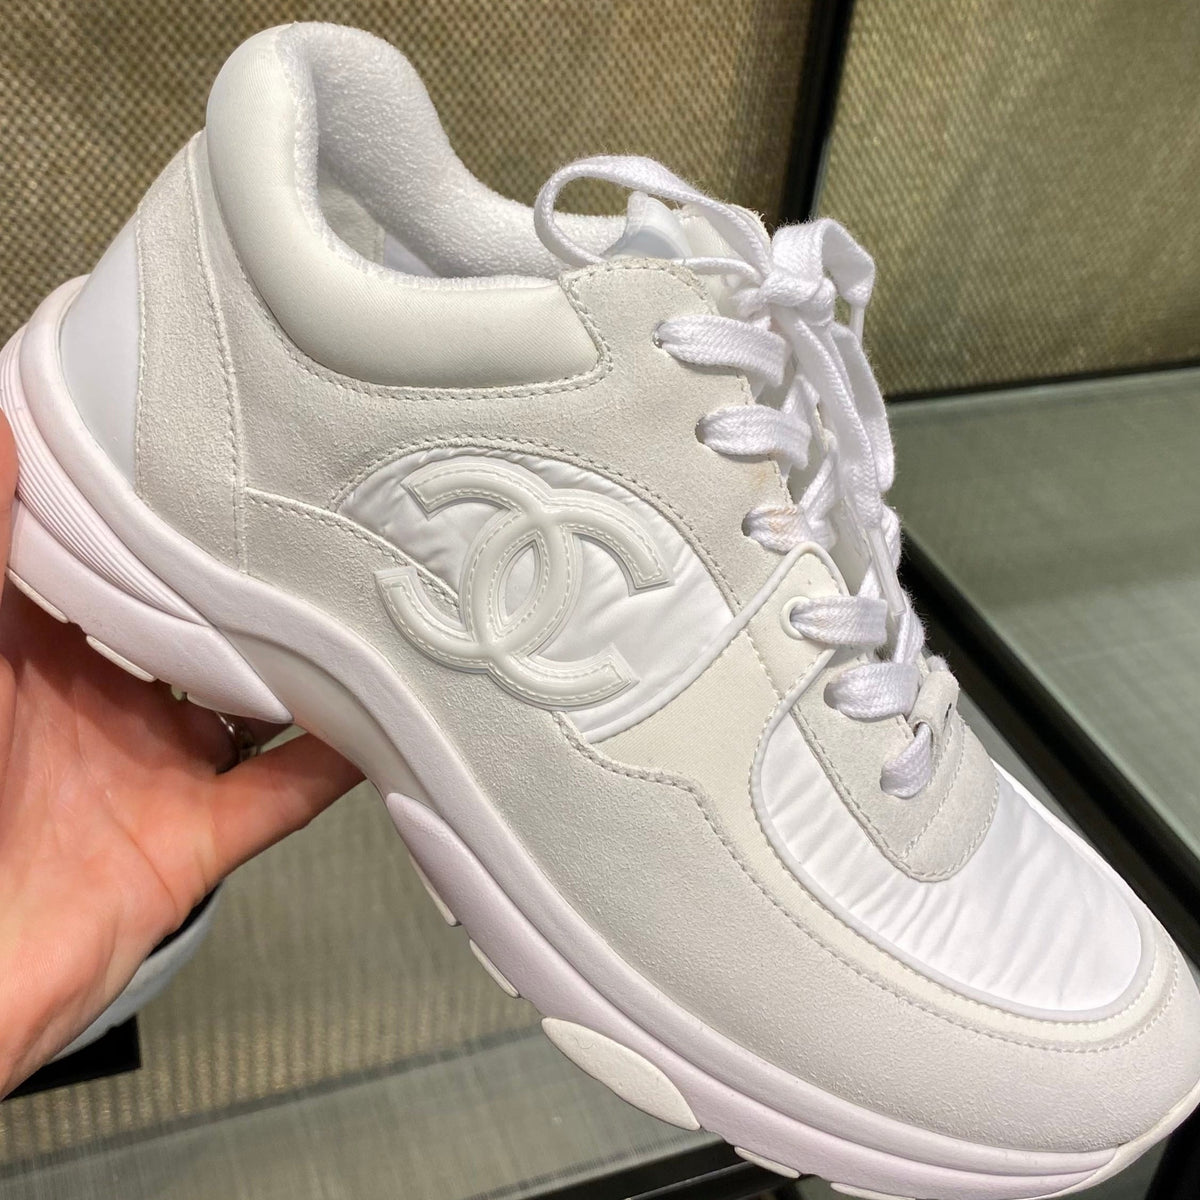 CHANEL, Shoes, Chanel Cc Logo Triple White Sneaker